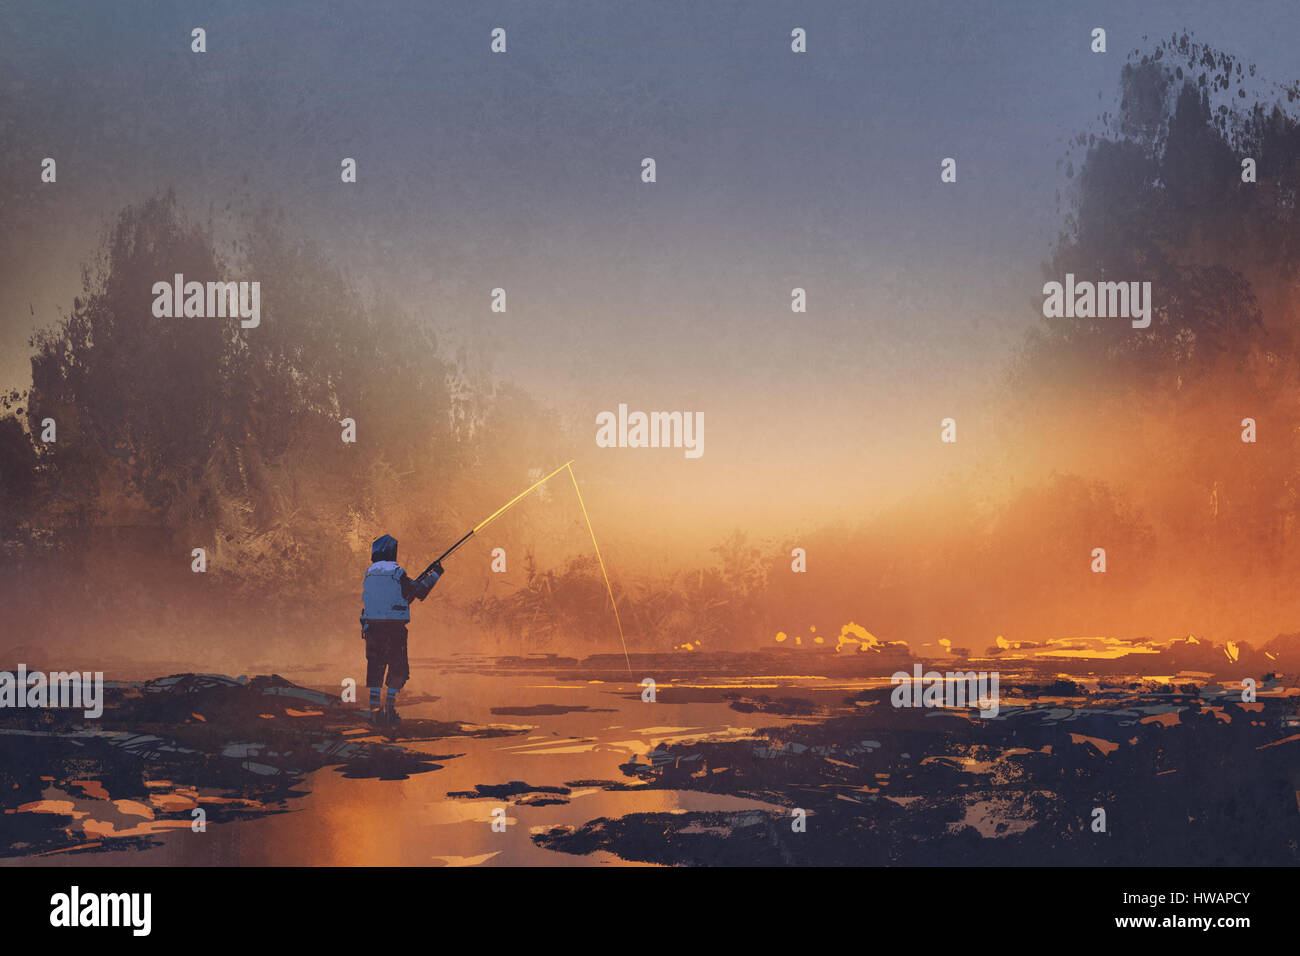 Pêche à l'homme dans le lac lors d'un lever de soleil brumeux,illustration peinture Banque D'Images